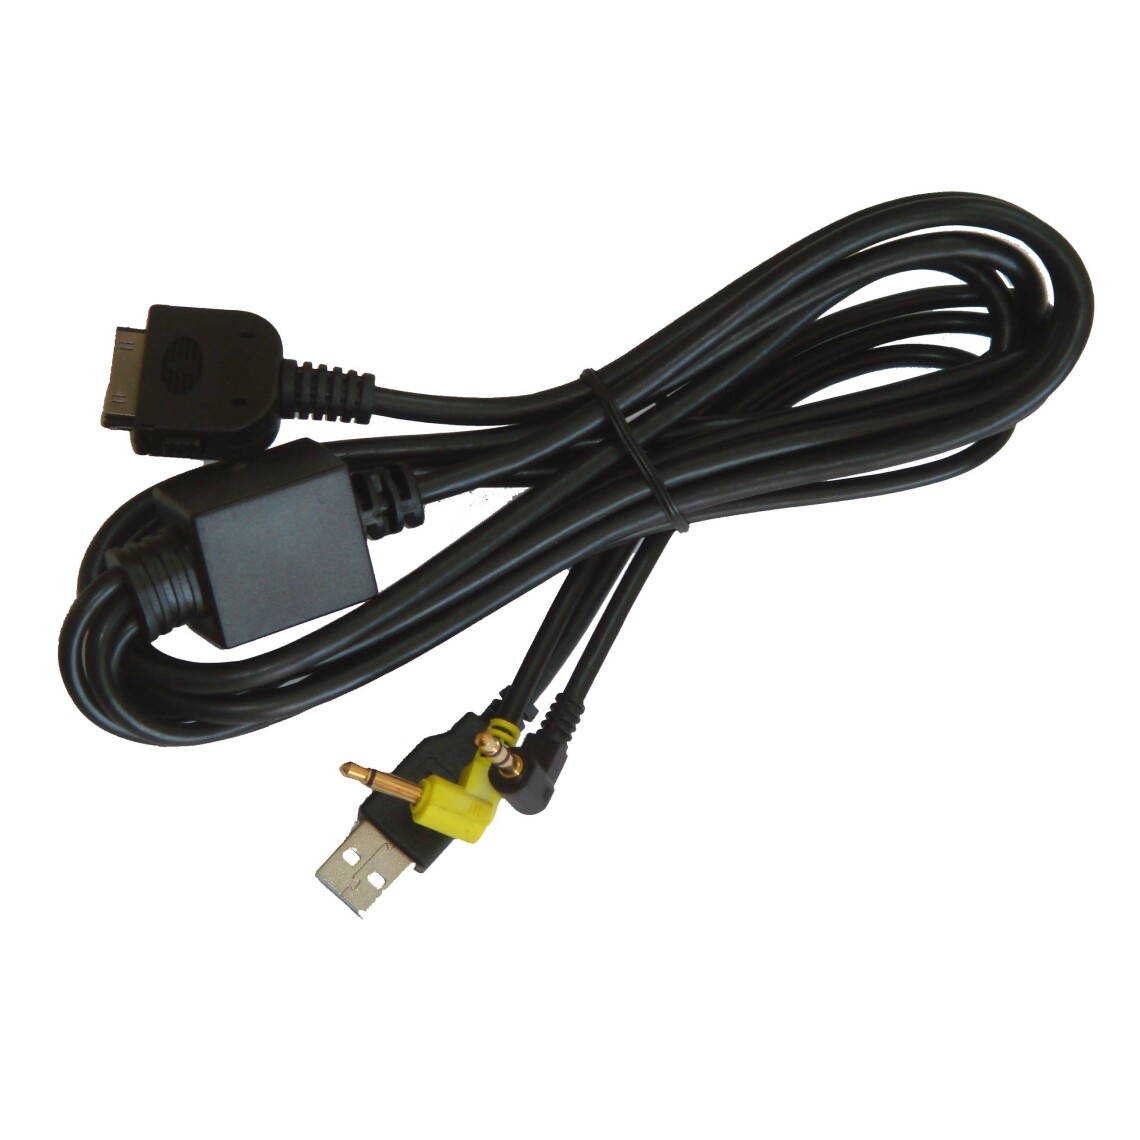 Vhbw - vhbw Câble adaptateur de ligne AUX Radio compatible avec Apple iPod Classic, Generation 5, Touch, Touch Generation 2, Video voiture - USB, prise jack - Alimentation modulaire